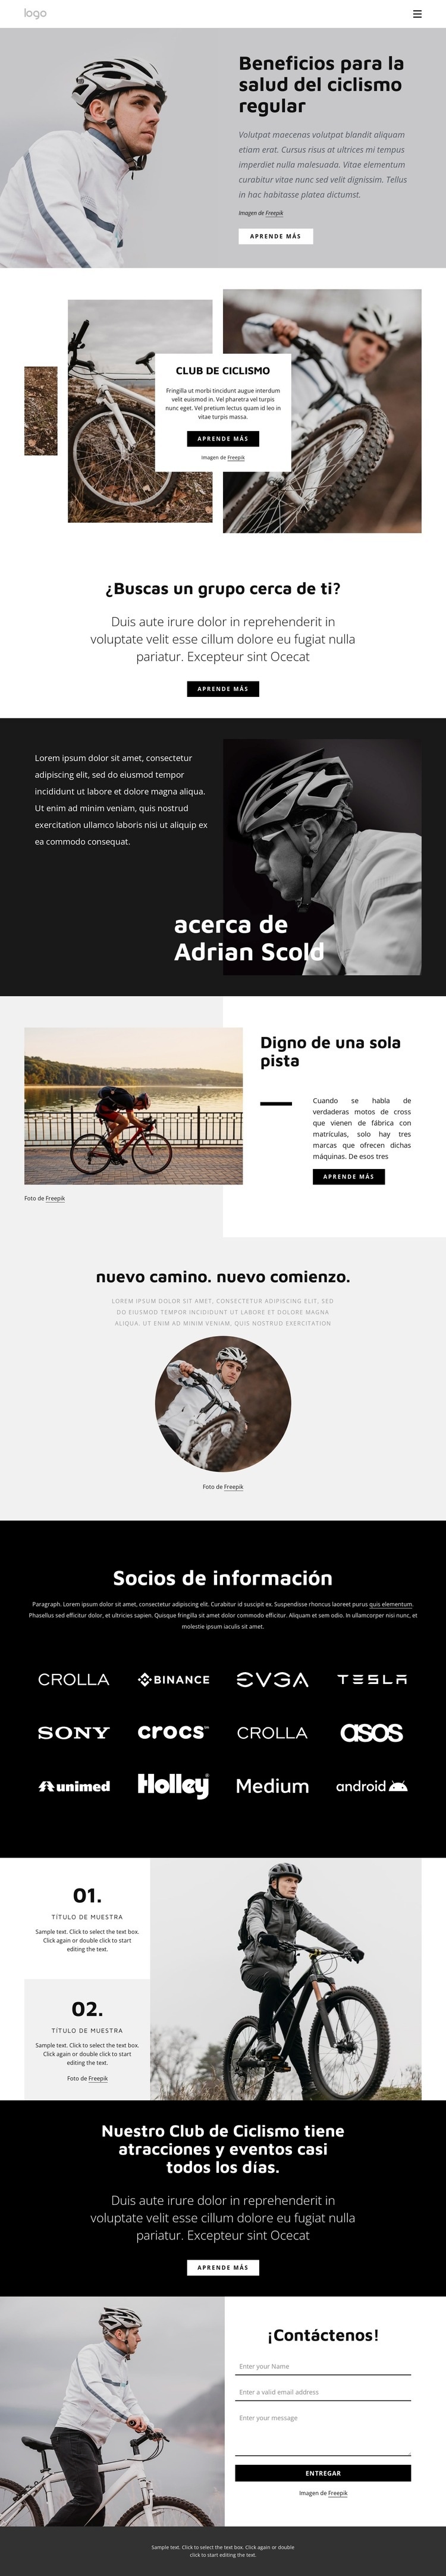 Beneficios del ciclismo regular Maqueta de sitio web